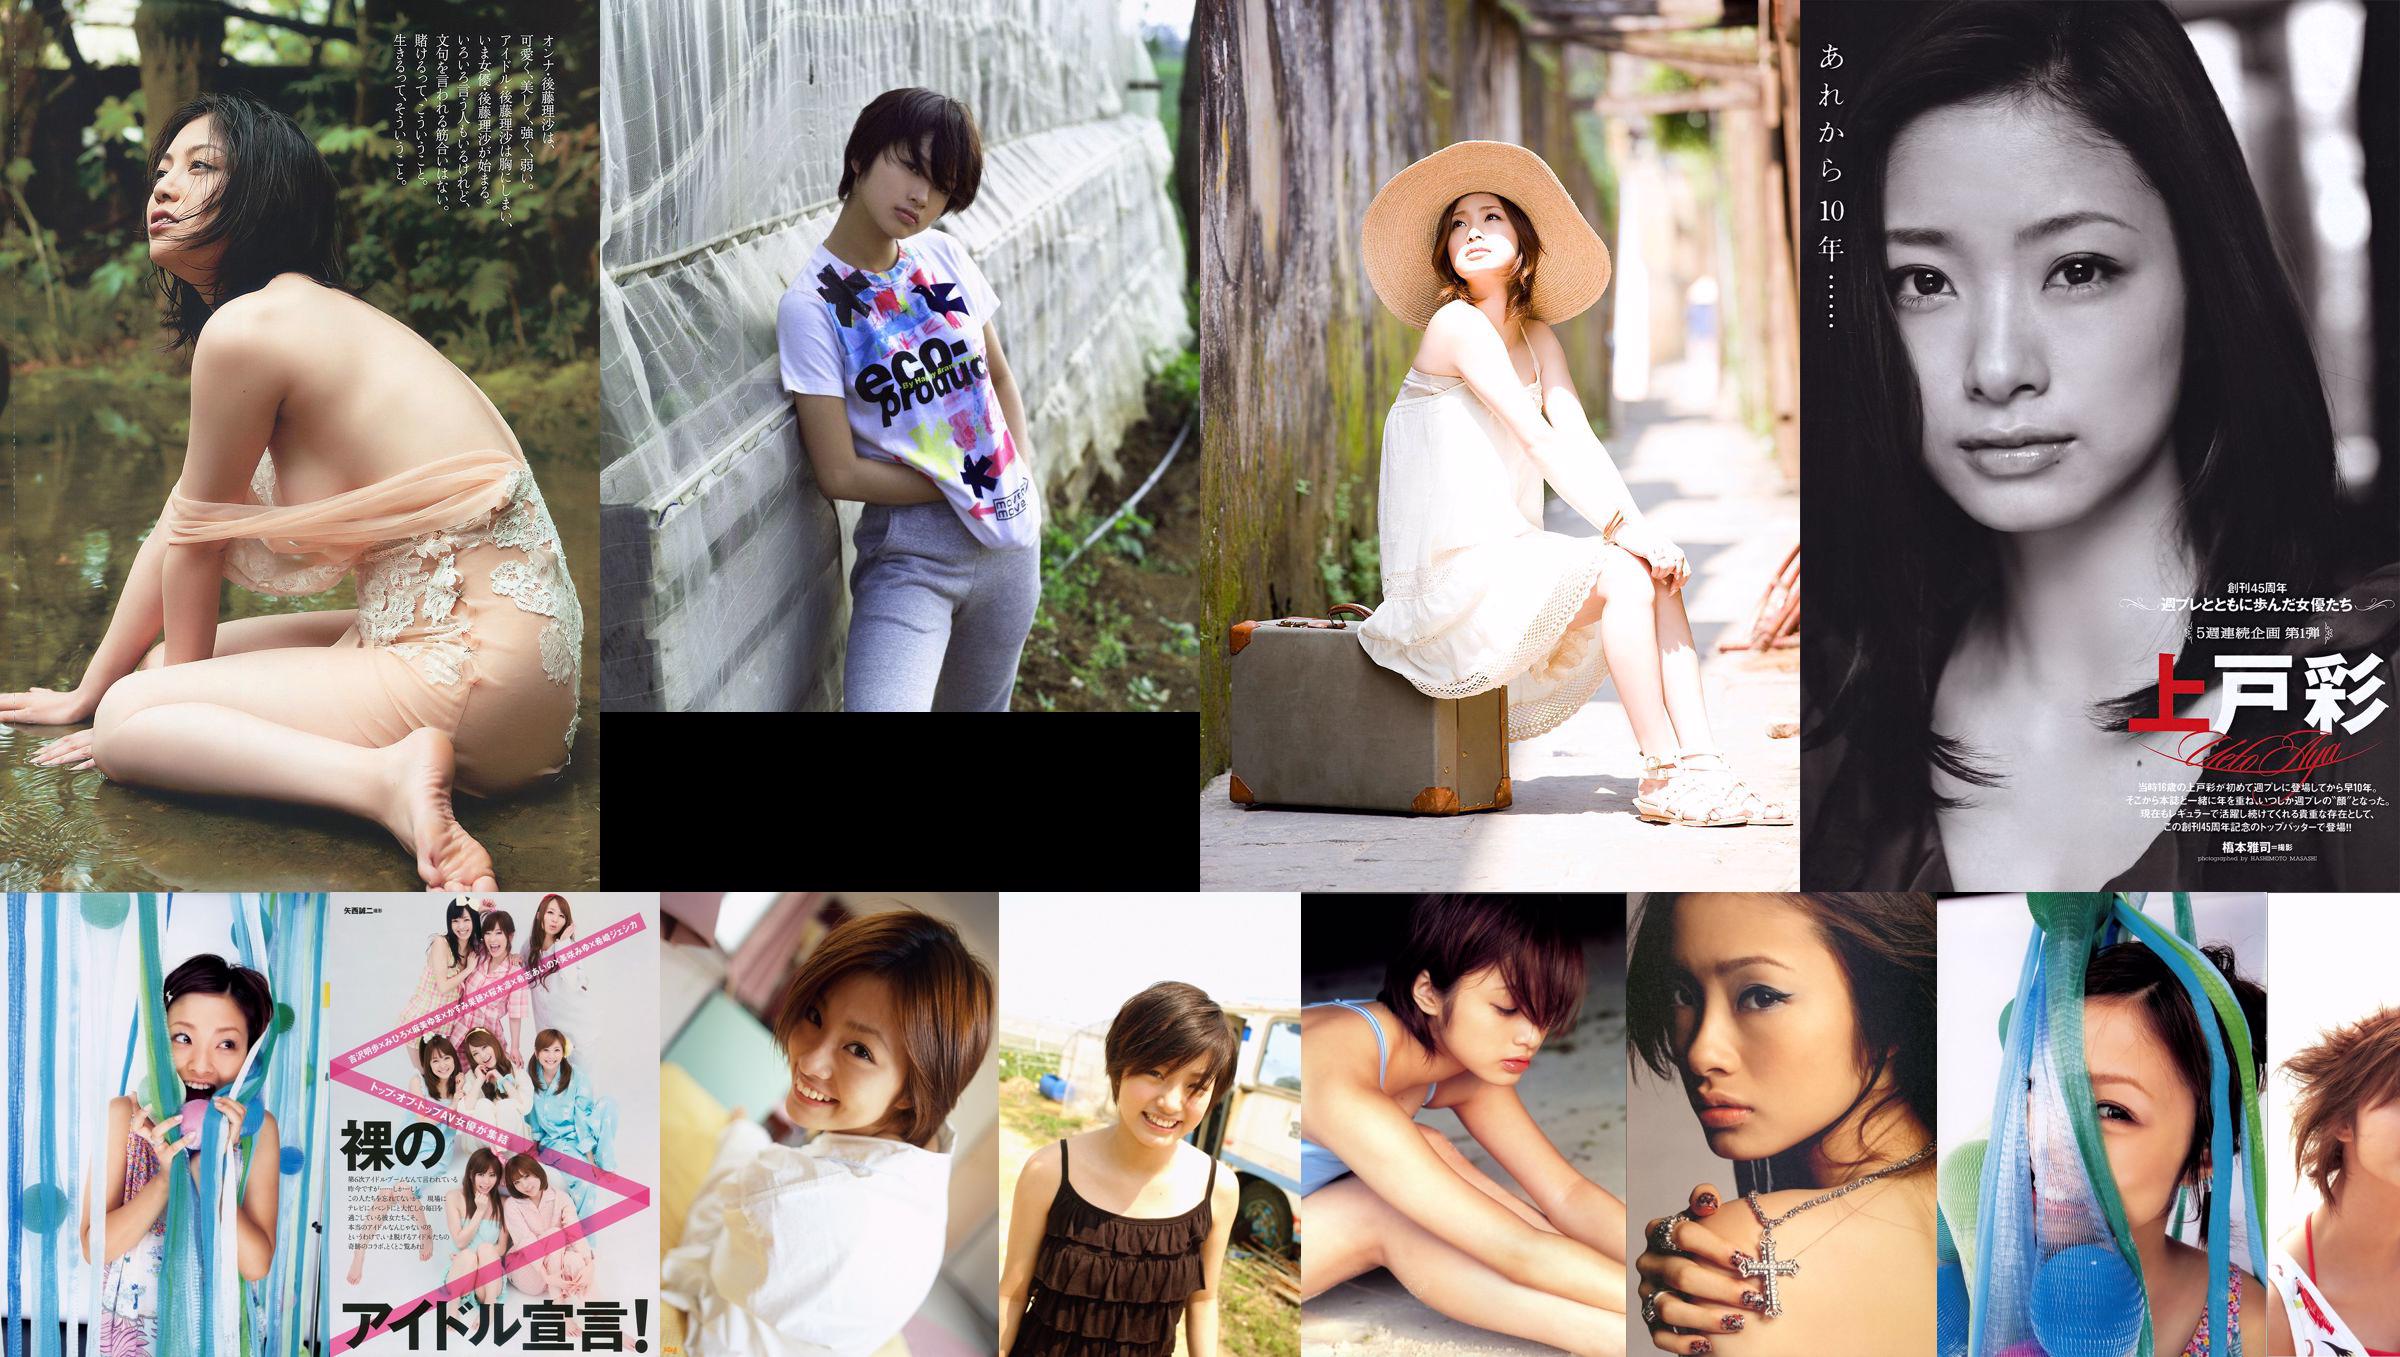 Aya Uedo, Aizawa, Kafei, AKB48 Shiraishi Miho, Goto Risa [Tygodniowy Playboy] 2010 No.19-20 Photo Magazine No.01b3cc Strona 5